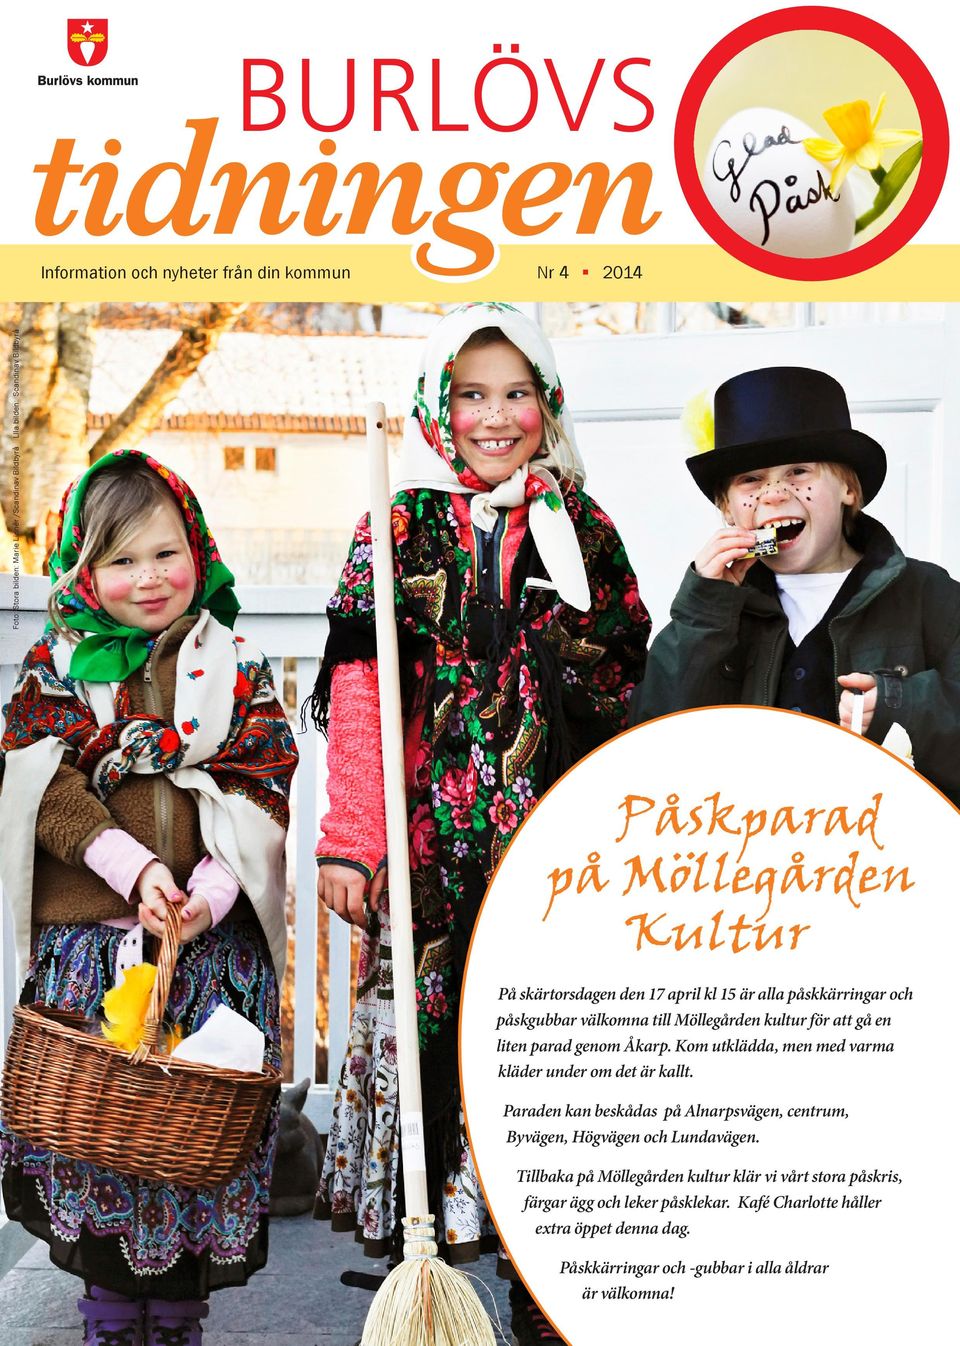 Kom utklädda, men med varma kläder under om det är kallt. Paraden kan beskådas på Alnarpsvägen, centrum, Byvägen, Högvägen och Lundavägen.